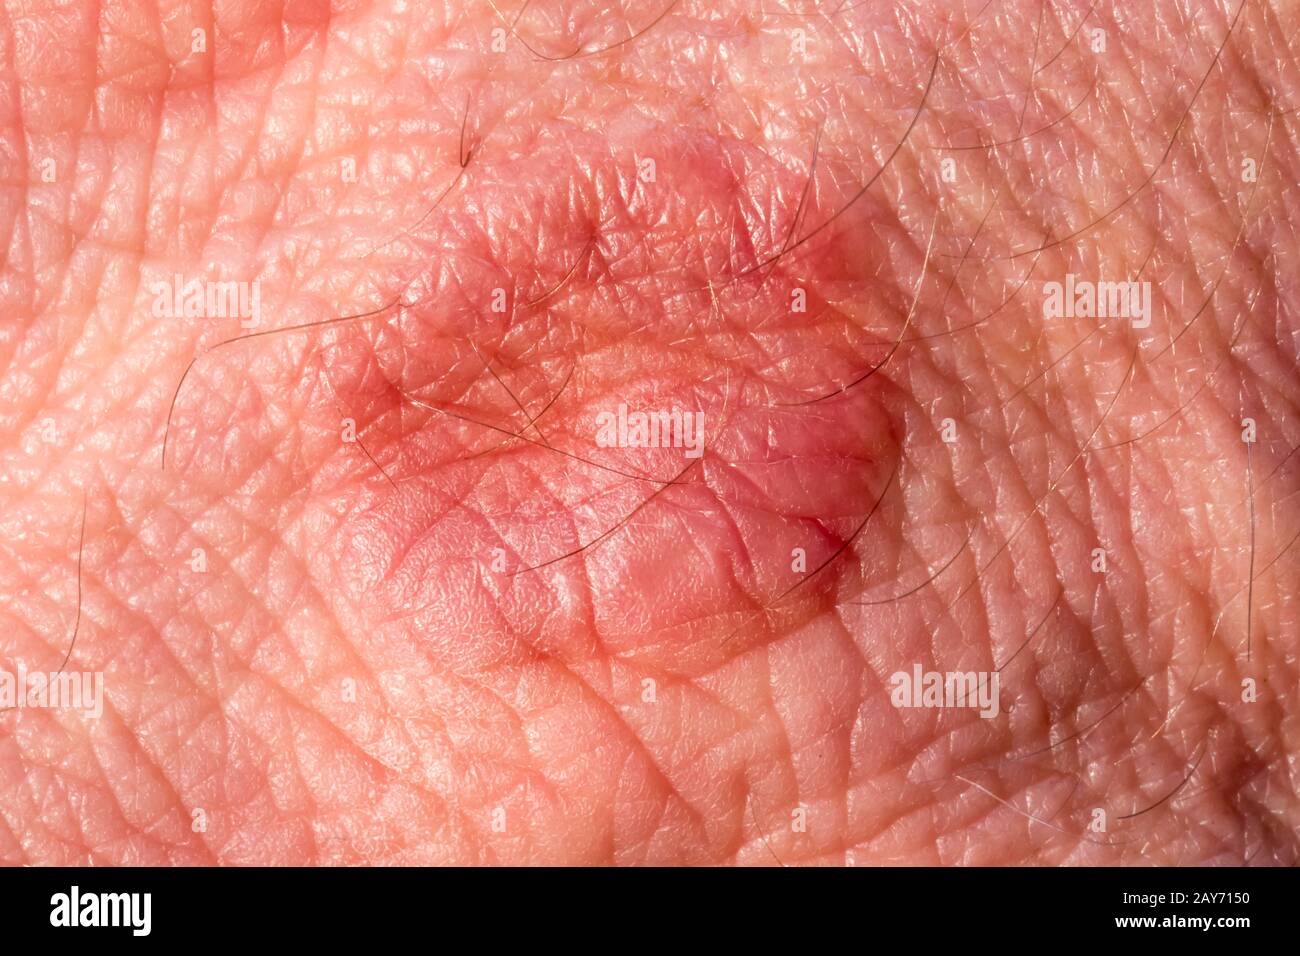 Skin with rash / eczema Stock Photo